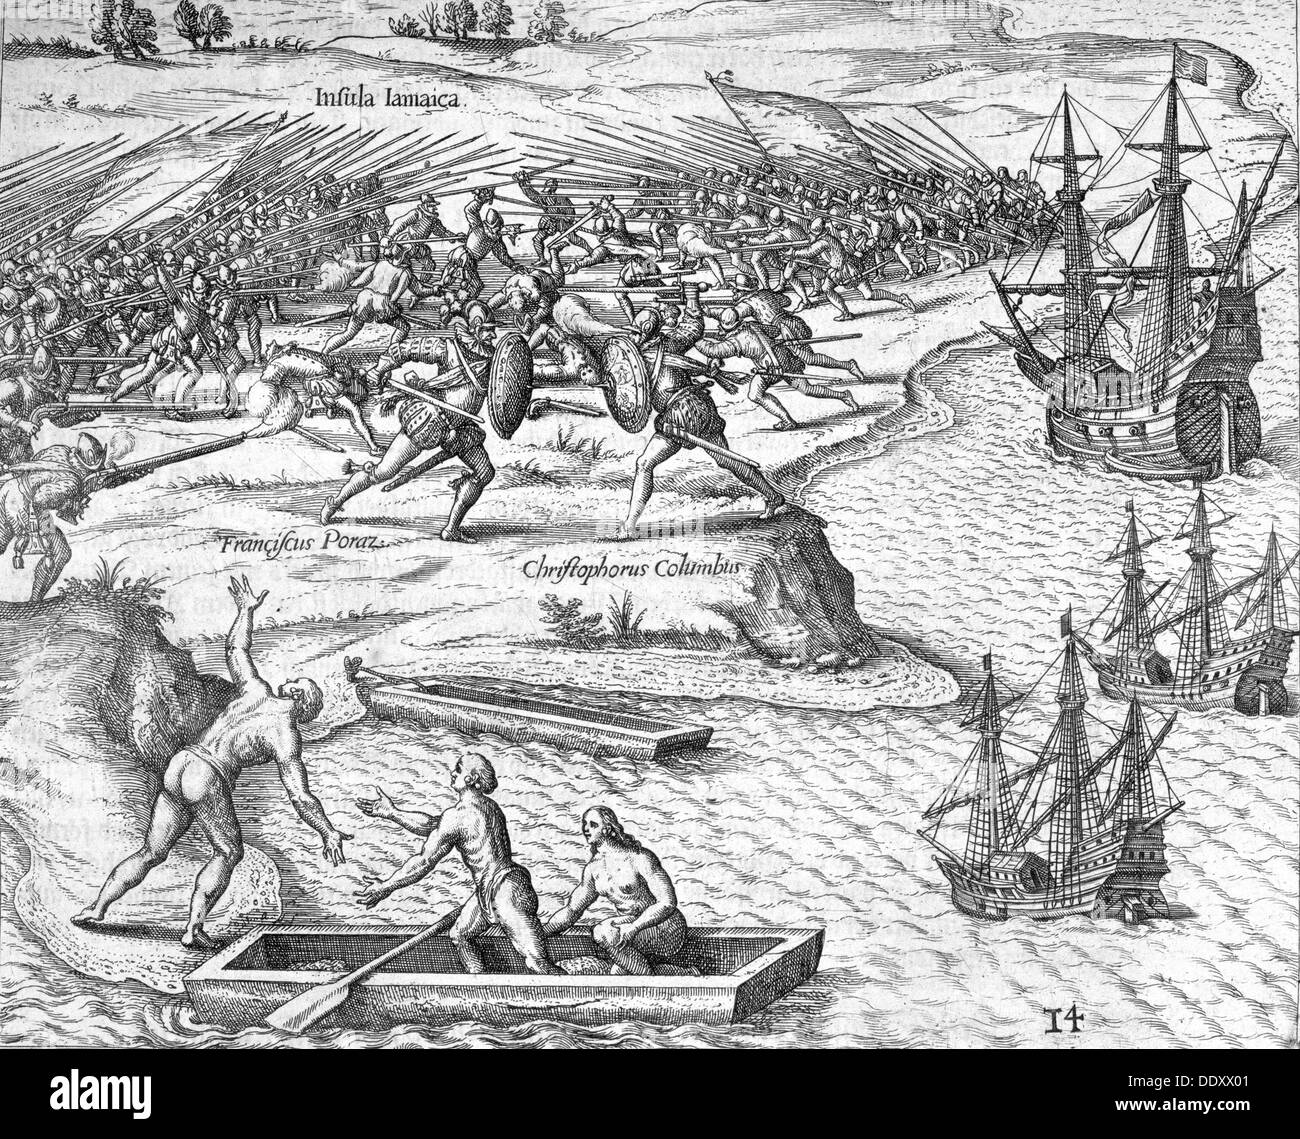 Schlacht in Jamaika zwischen Christopher Columbus und Francisco Poraz 1504 (1631). Künstler: Theodore de Bry Stockfoto